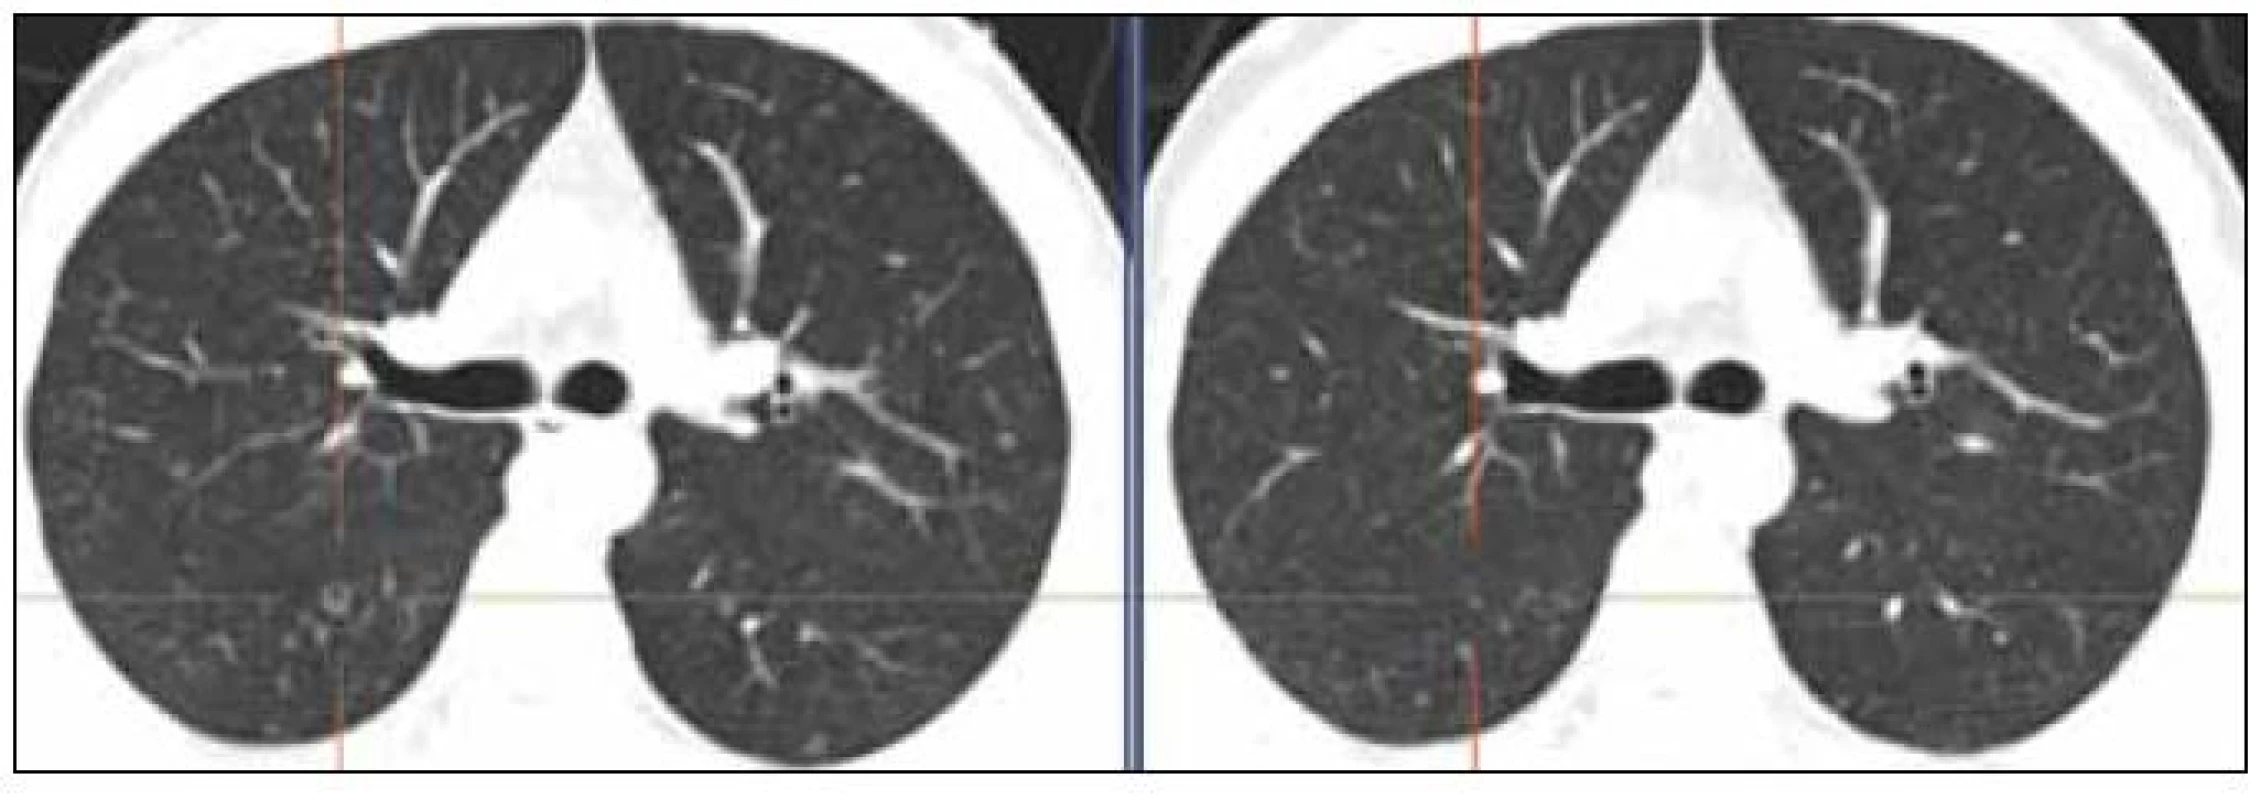 Ilustrativní snímky plicního parenchymu. Před léčbou – snímek vlevo 10/2010 (cystoid), po 4. cyklu léčby – snímek vpravo 1/2011 (jen nenápadná nodularita). Zmenšily se i 2 drobné opacity v levém plicním křídle ve stejné etáži dorzálně a laterálně.